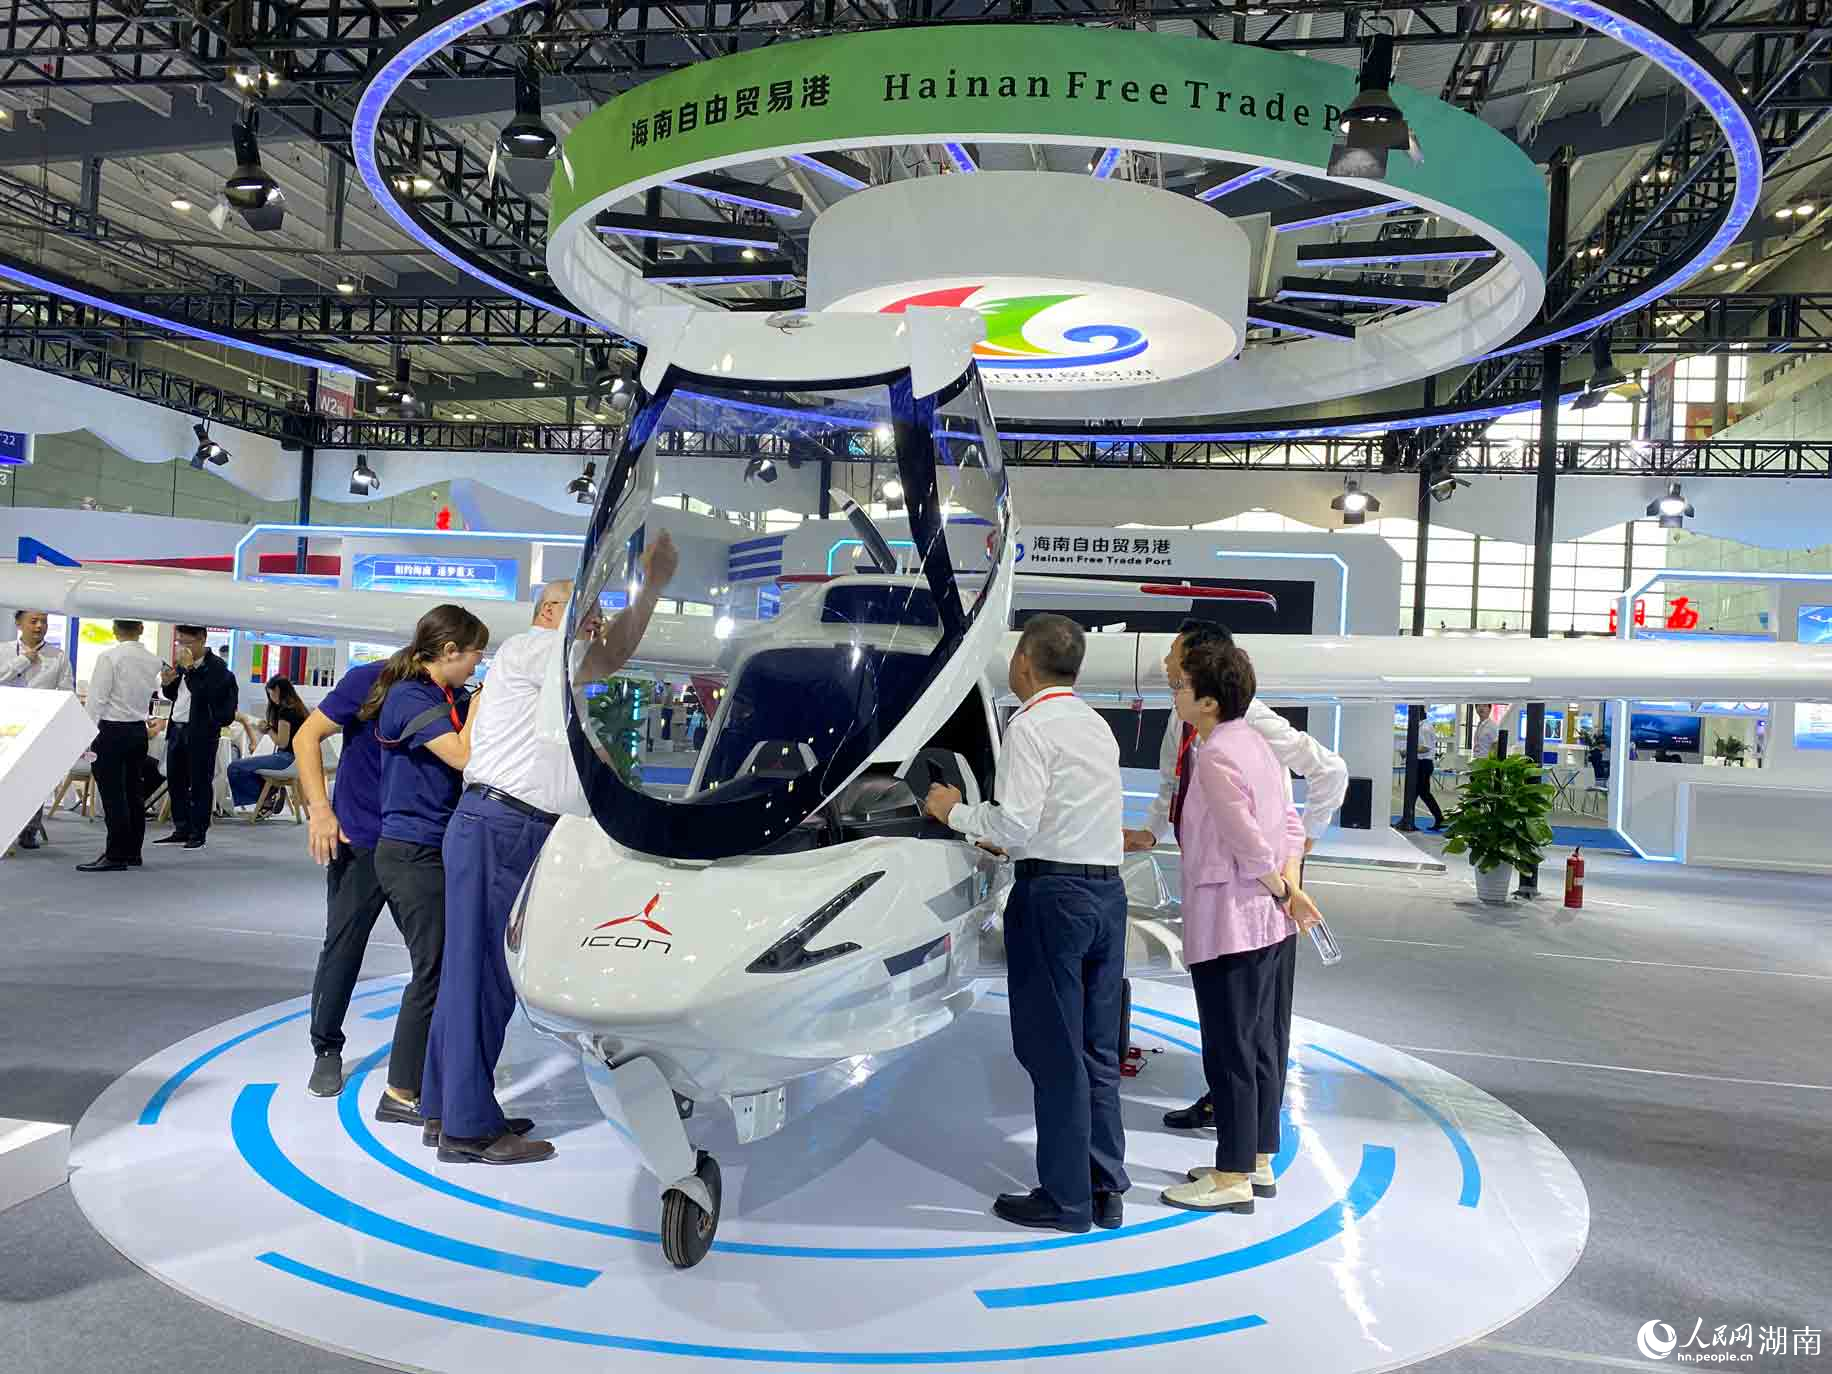 海南自由贸易港展区轻型运动飞机展示。 人民网 向宇摄